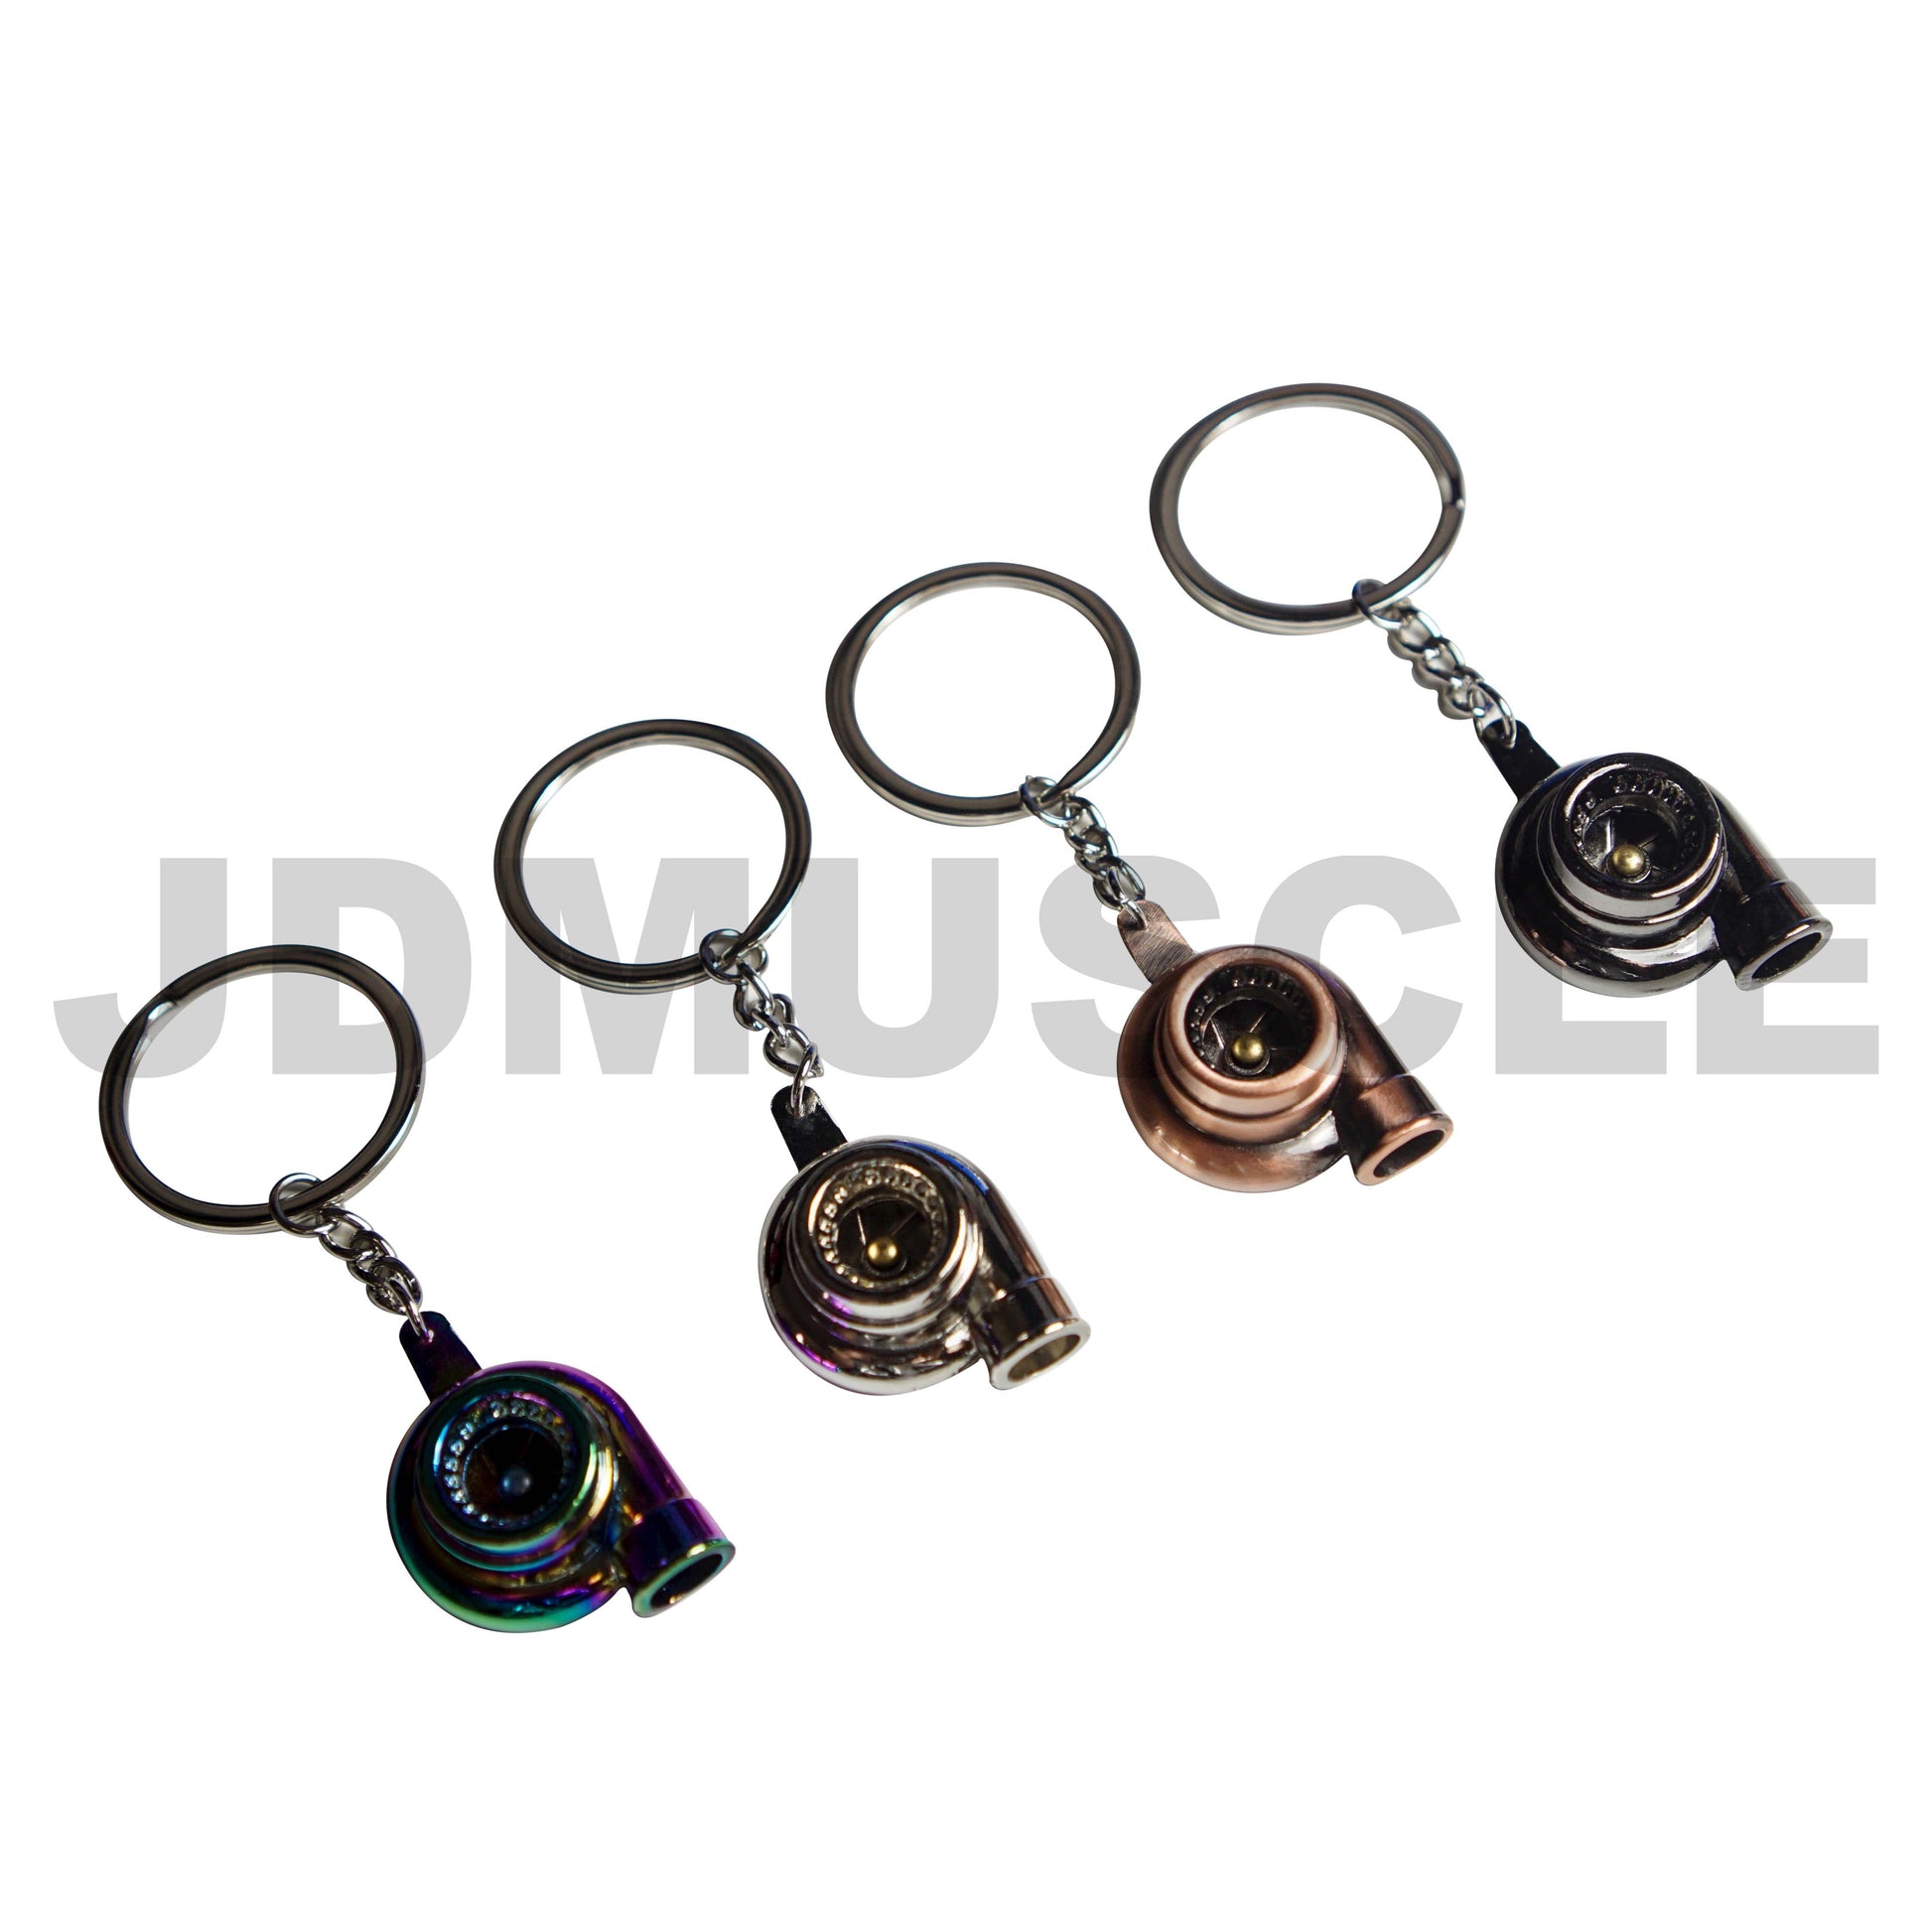 JDMuscle Mini Turbo Key Chain-Key Chains and Lanyards-JDMuscle-JDMuscle